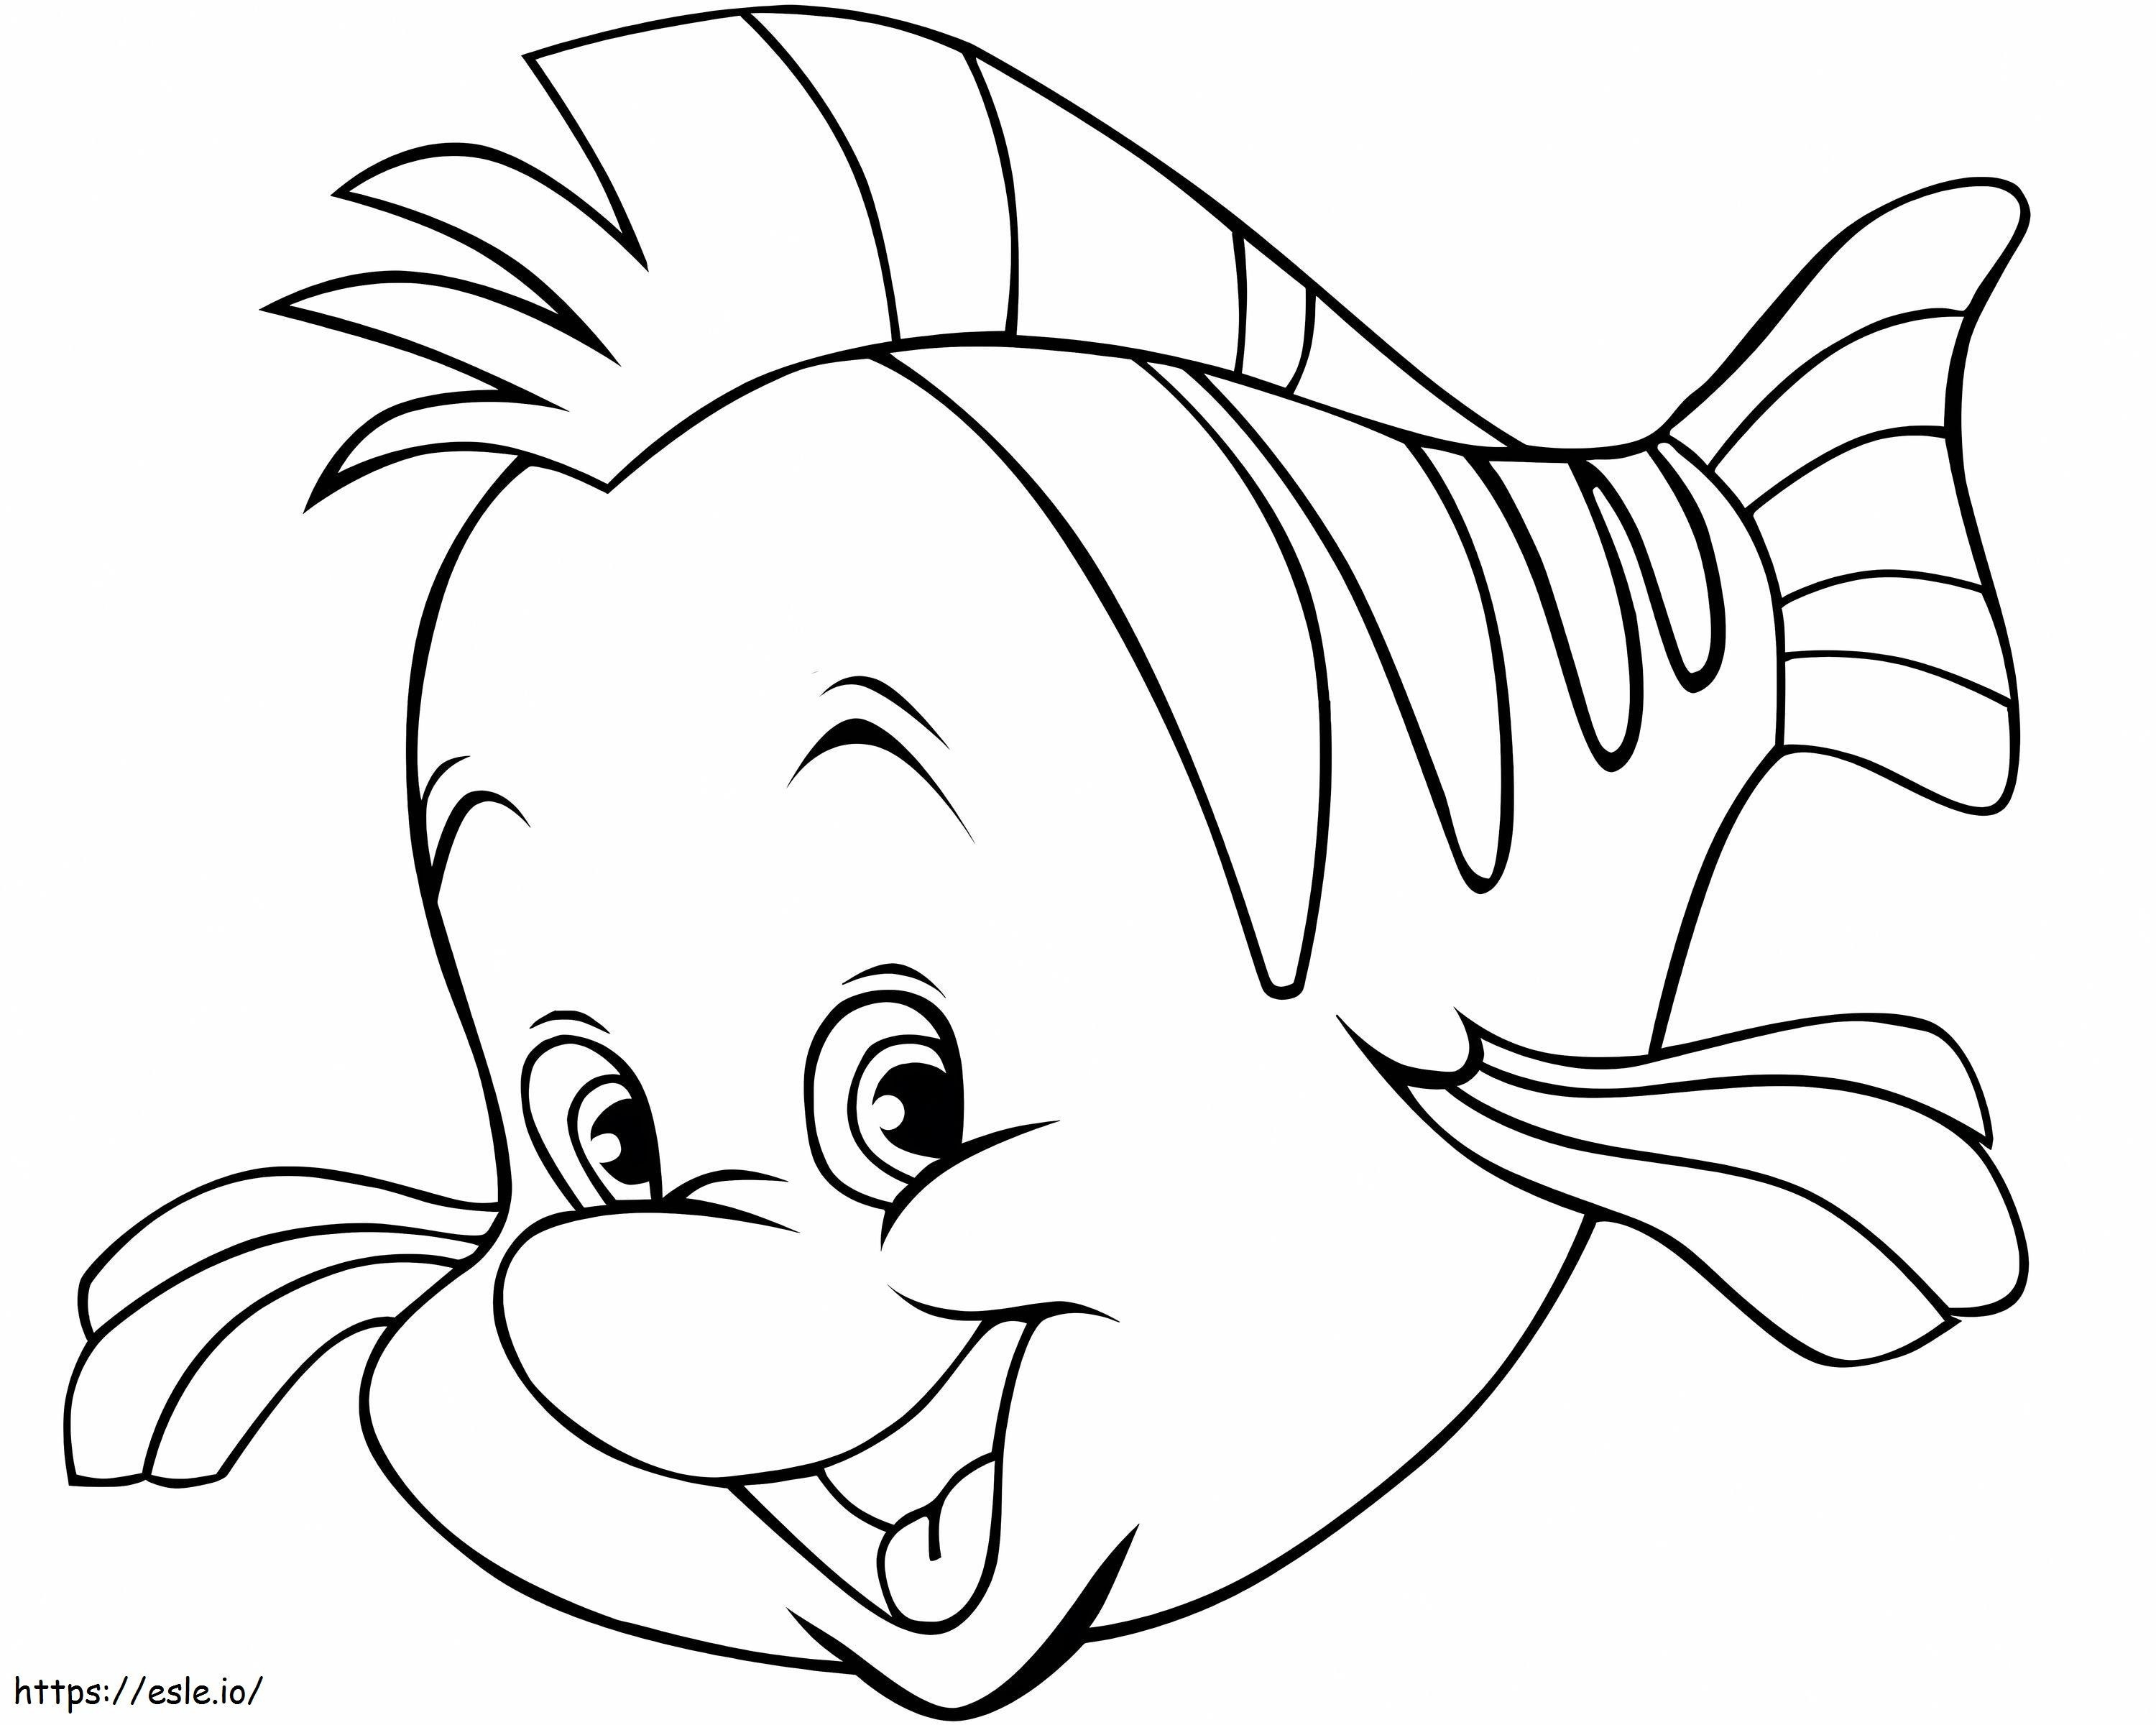 Lustiger Cartoon-Fisch ausmalbilder